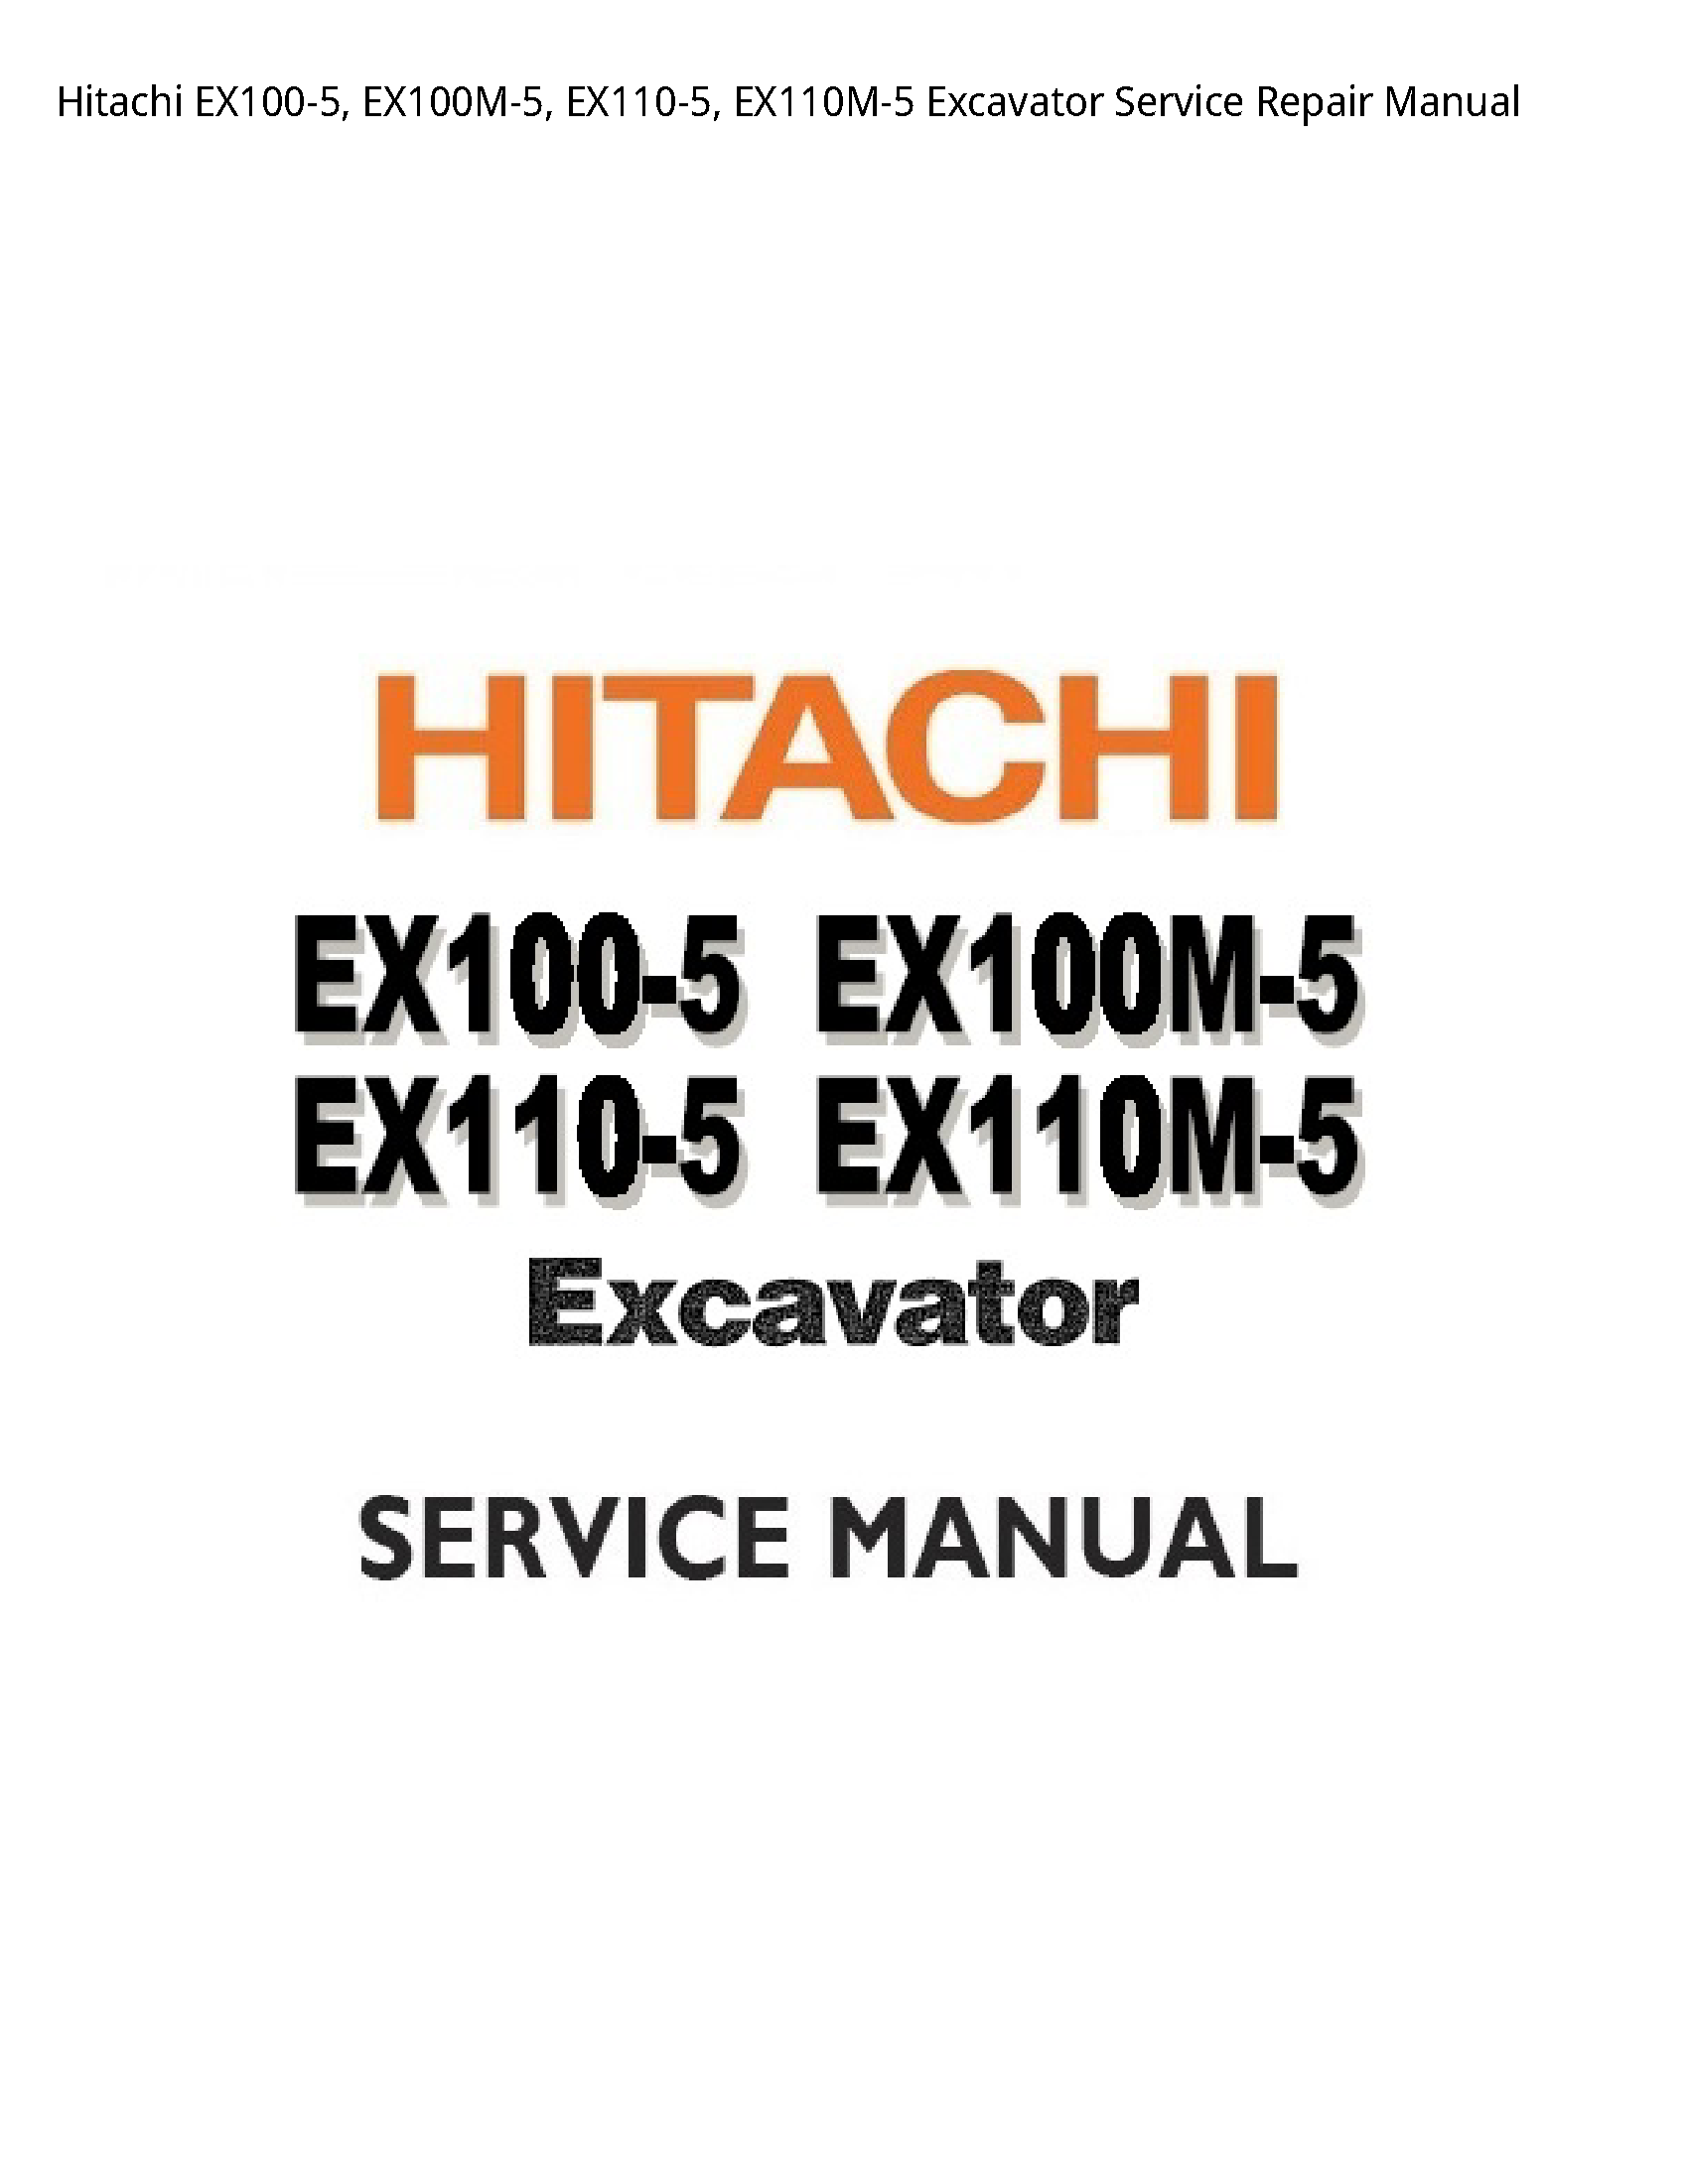 Hitachi EX100-5 Excavator manual